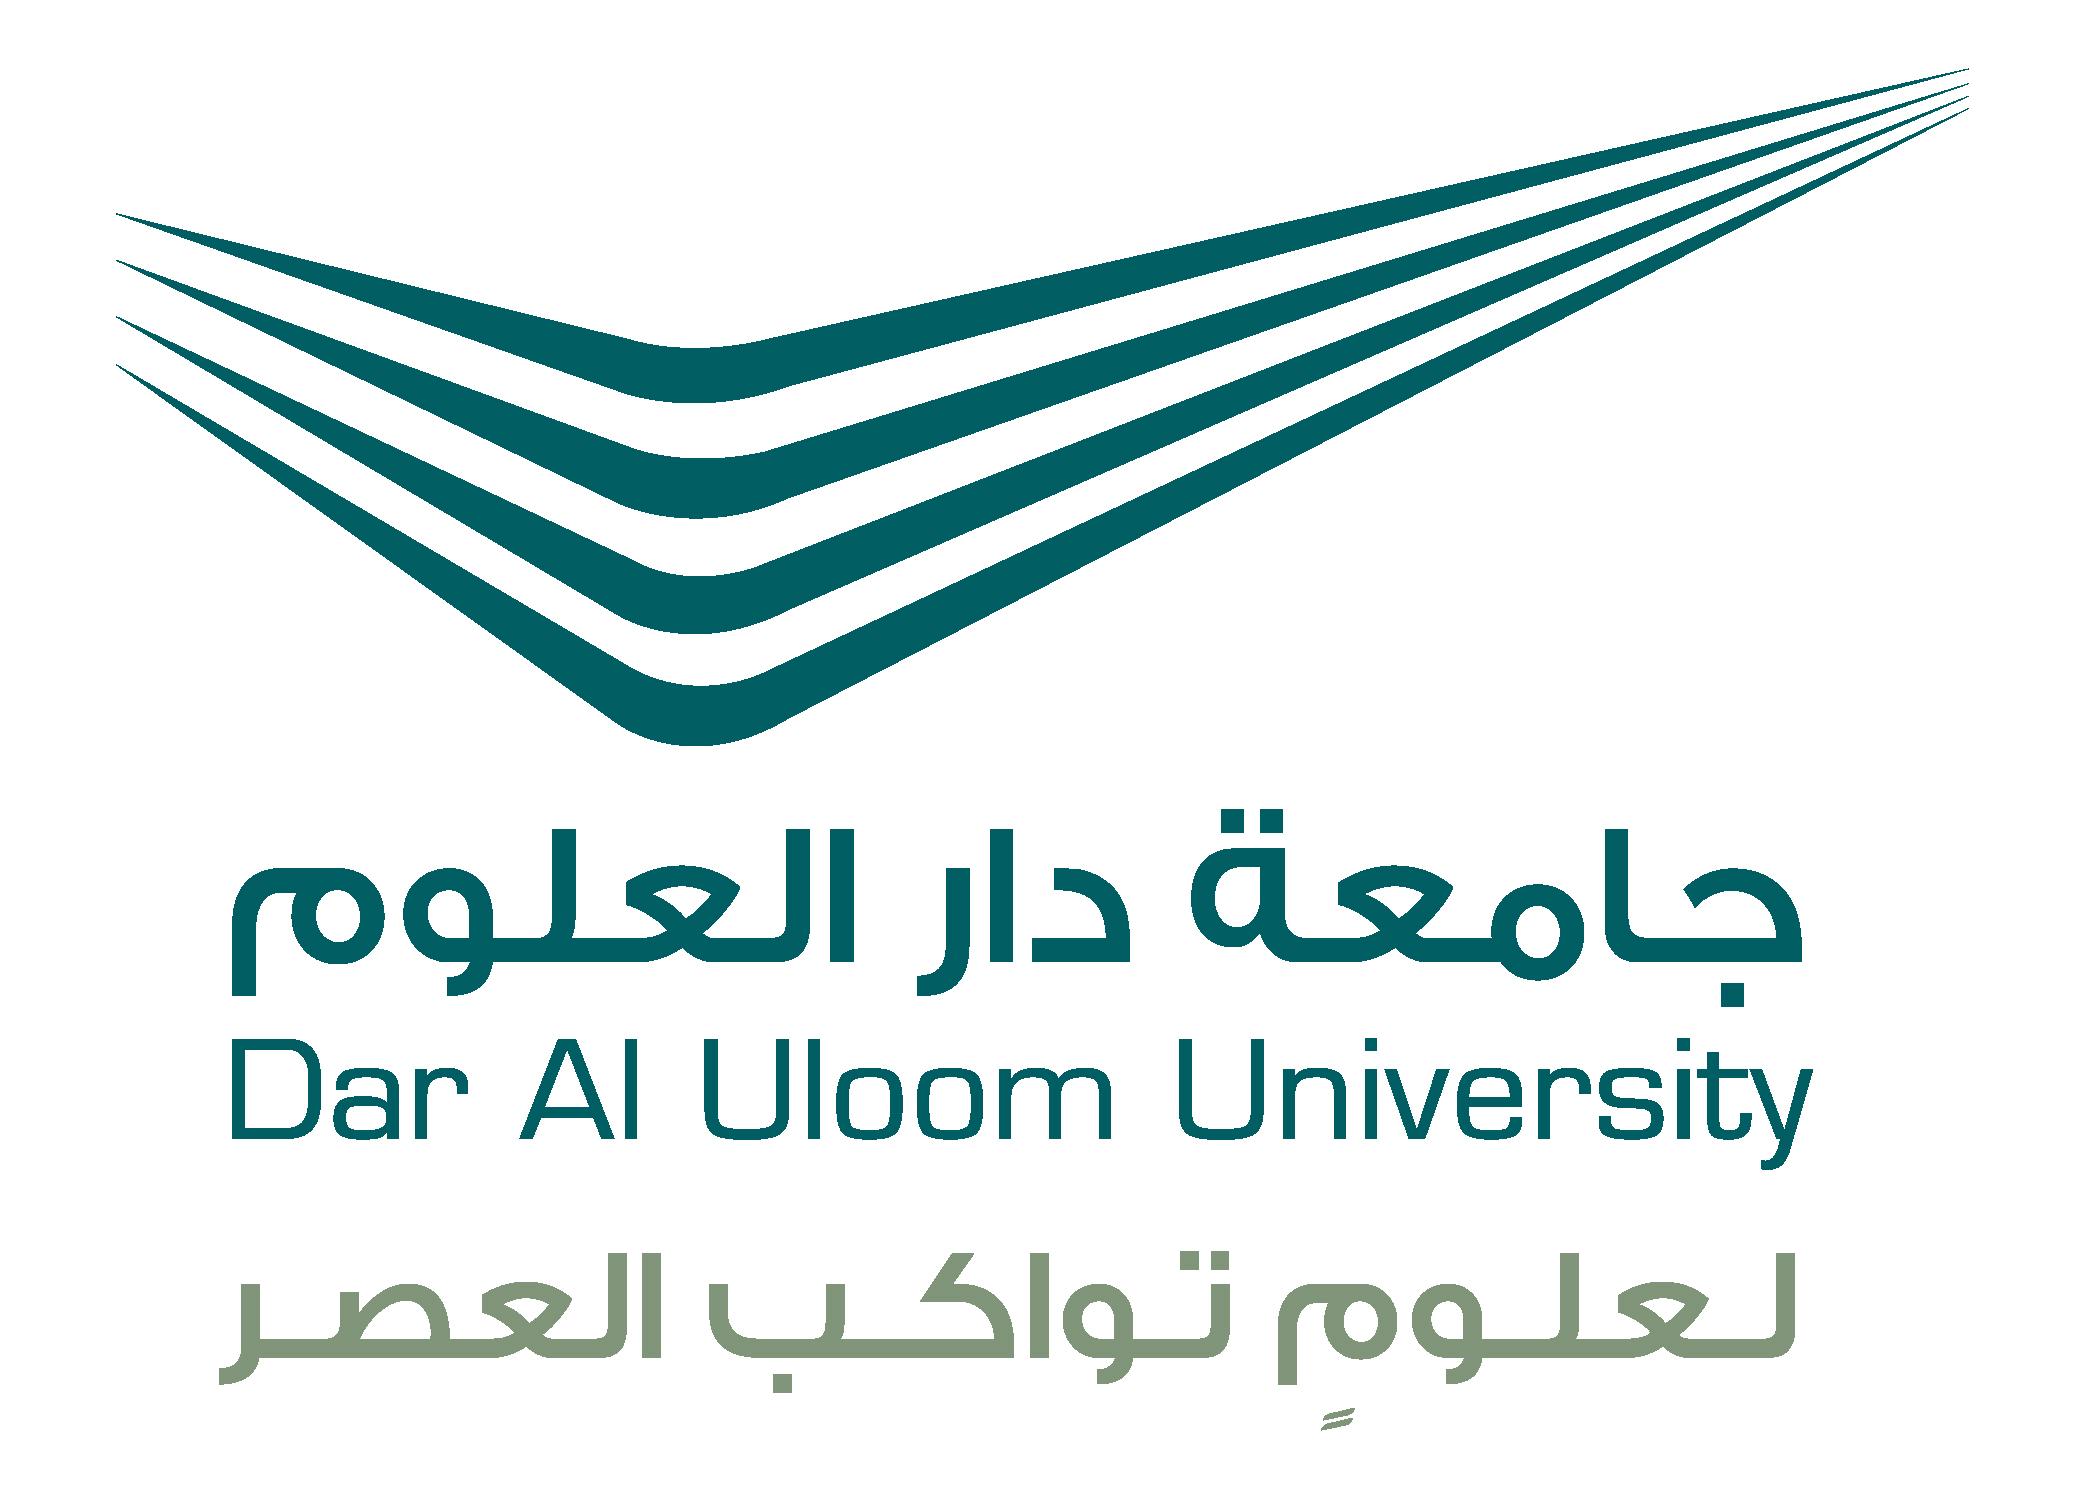 saudi جامعة دار العلوم